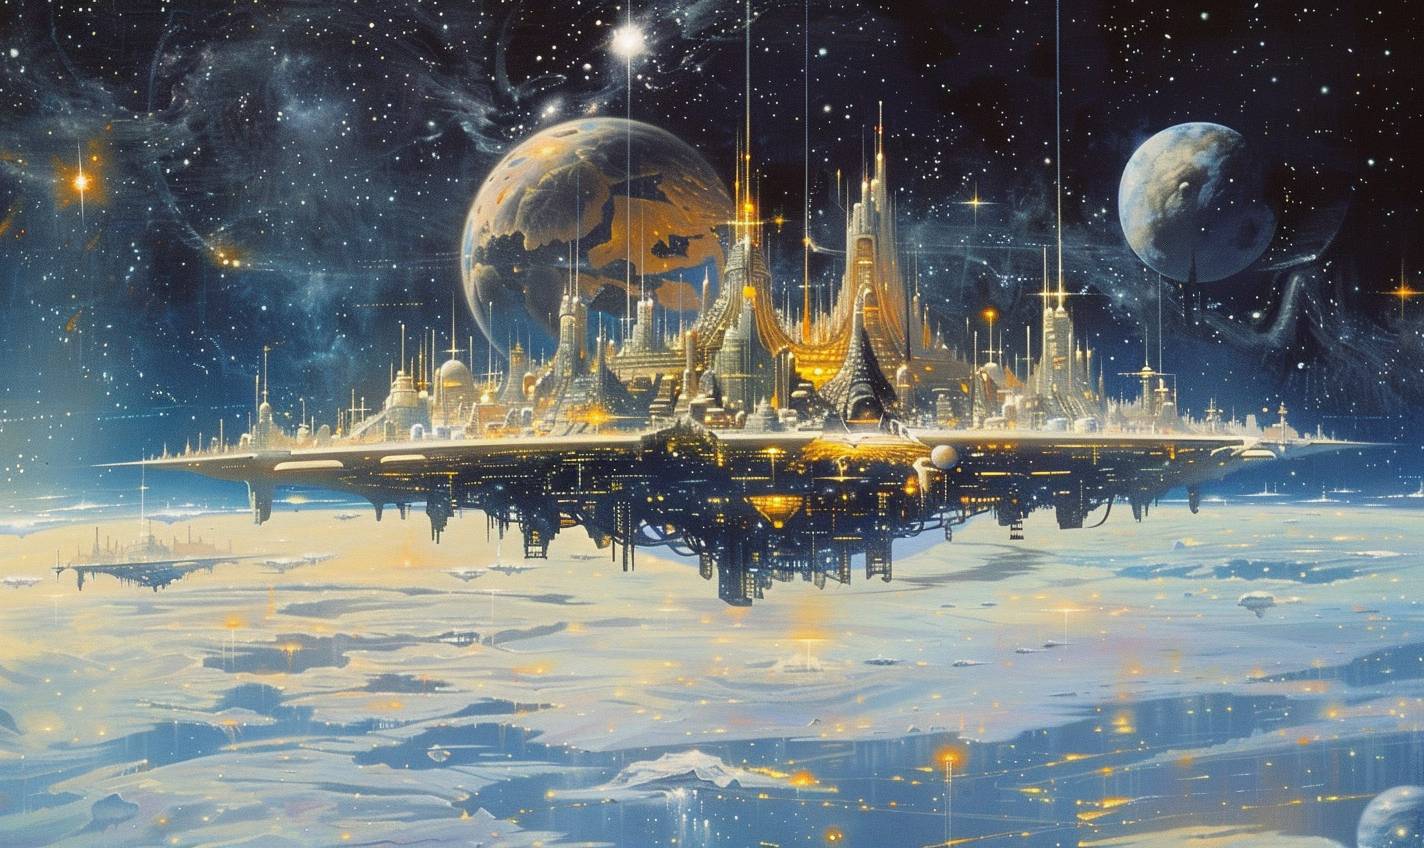 Peter Elsonのスタイルで、星々の間を浮遊する天空の都市